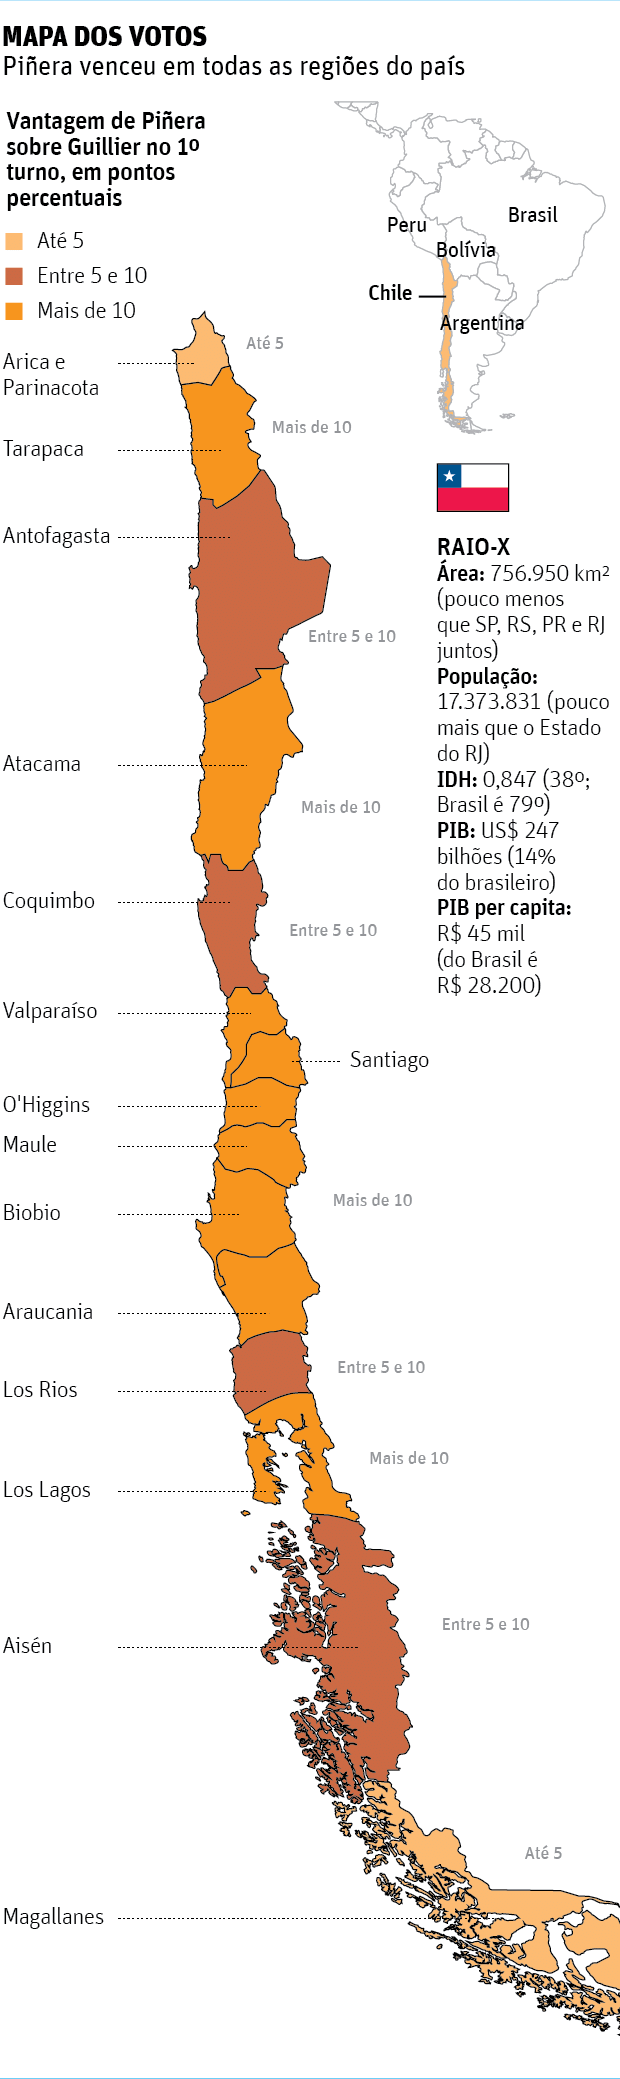 Mapa dos votosPiera venceu em todas as regies do pas 